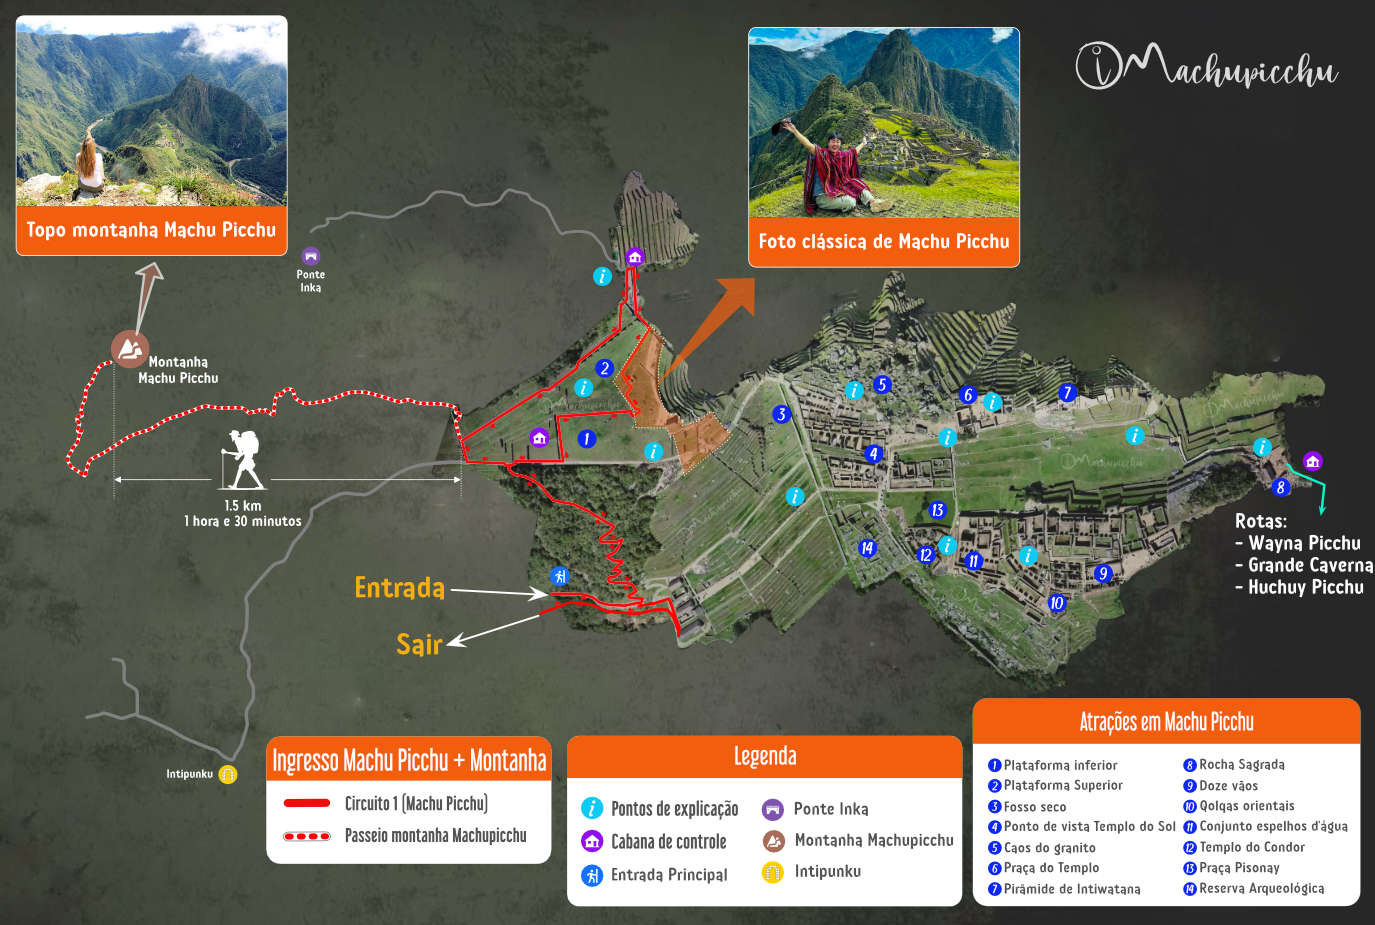 Machu Picchu + Mapa do ingresso de montanha